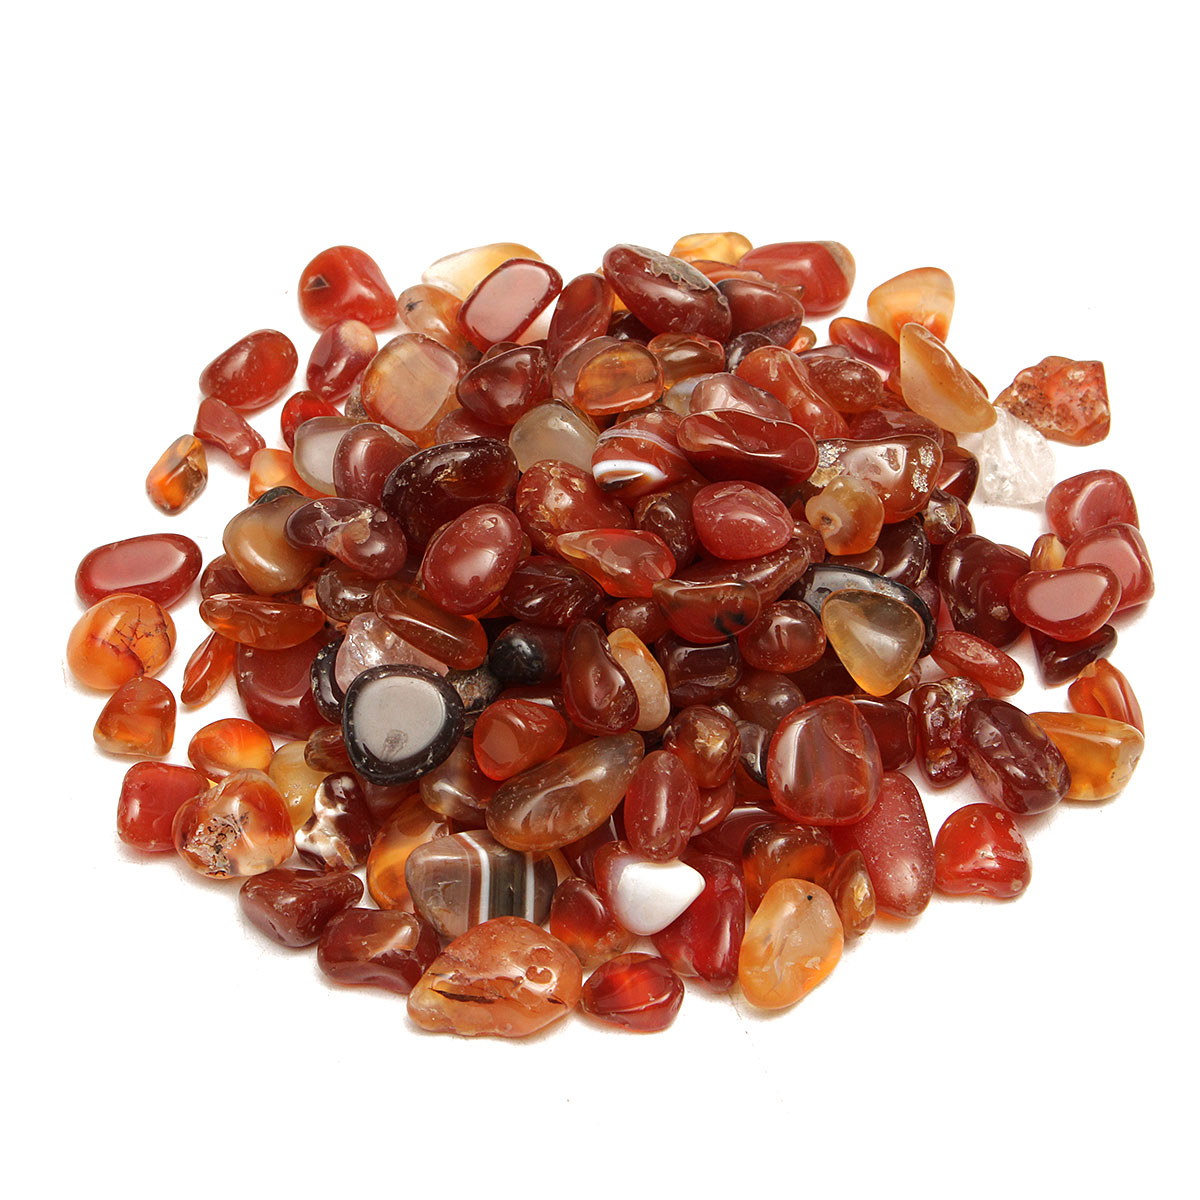 

100g Natural Red Gravel Agate Polished Healing Quartz Crystal Stones Specimens DIY